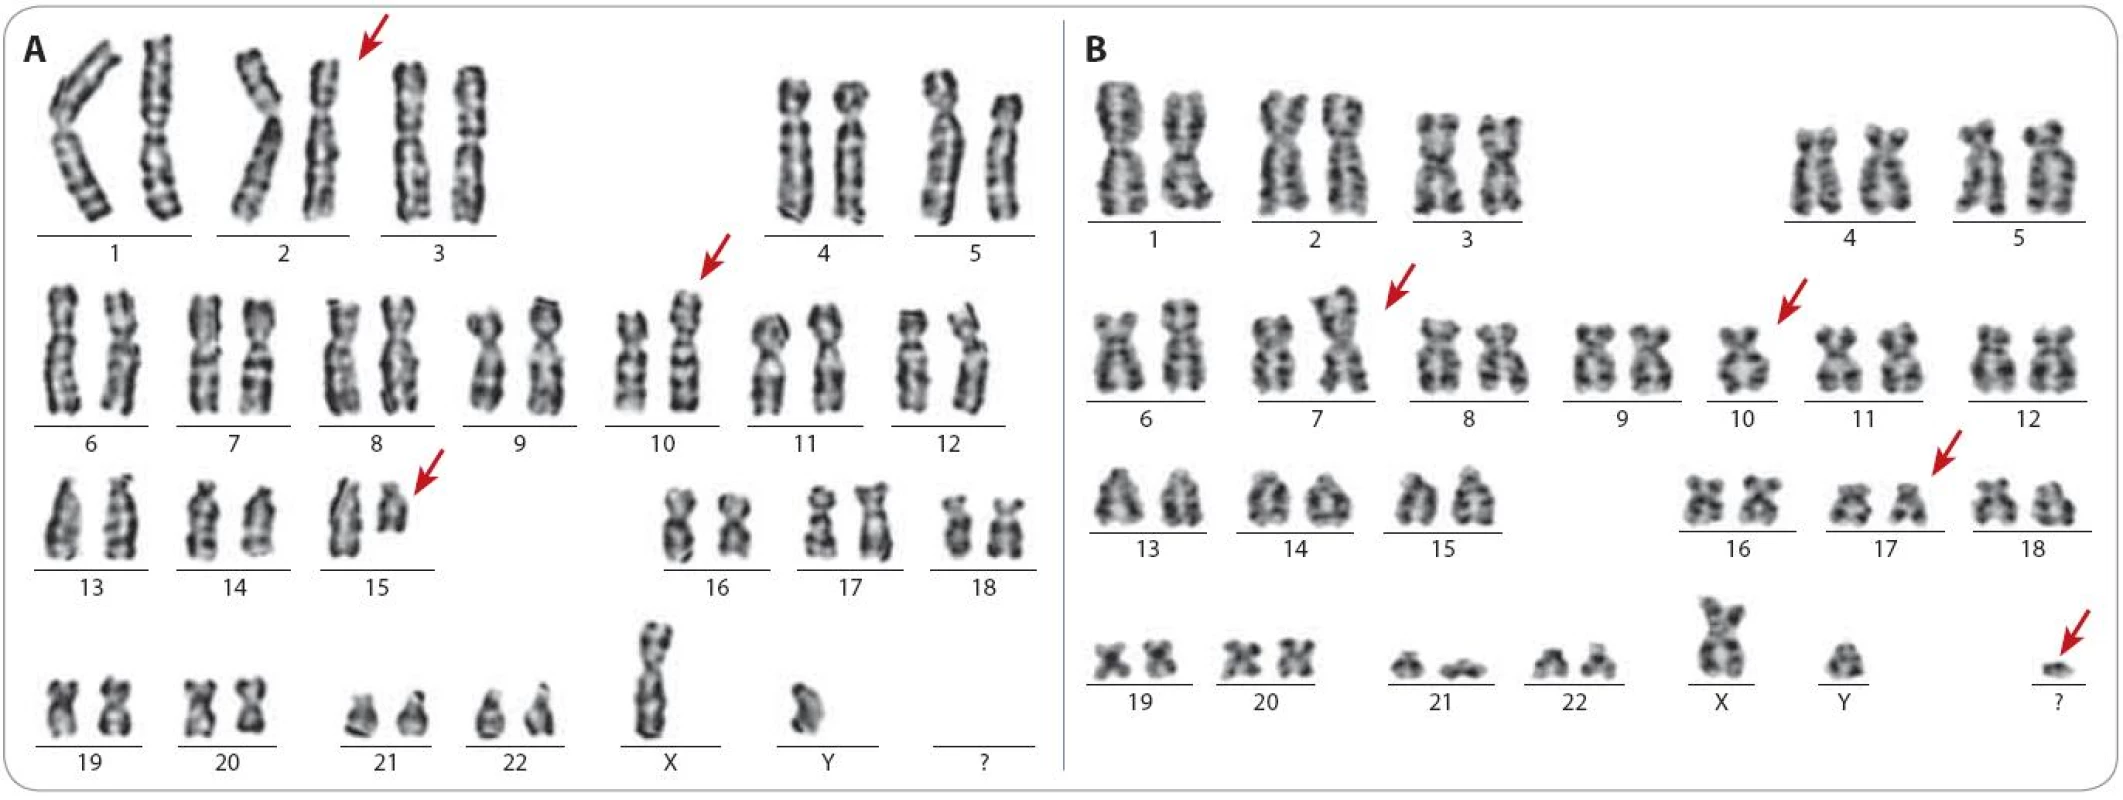 Ukázka karyotypu dvou pacientů s komplexními změnami. Červenými šipkami jsou označeny aberantní chromozomy.